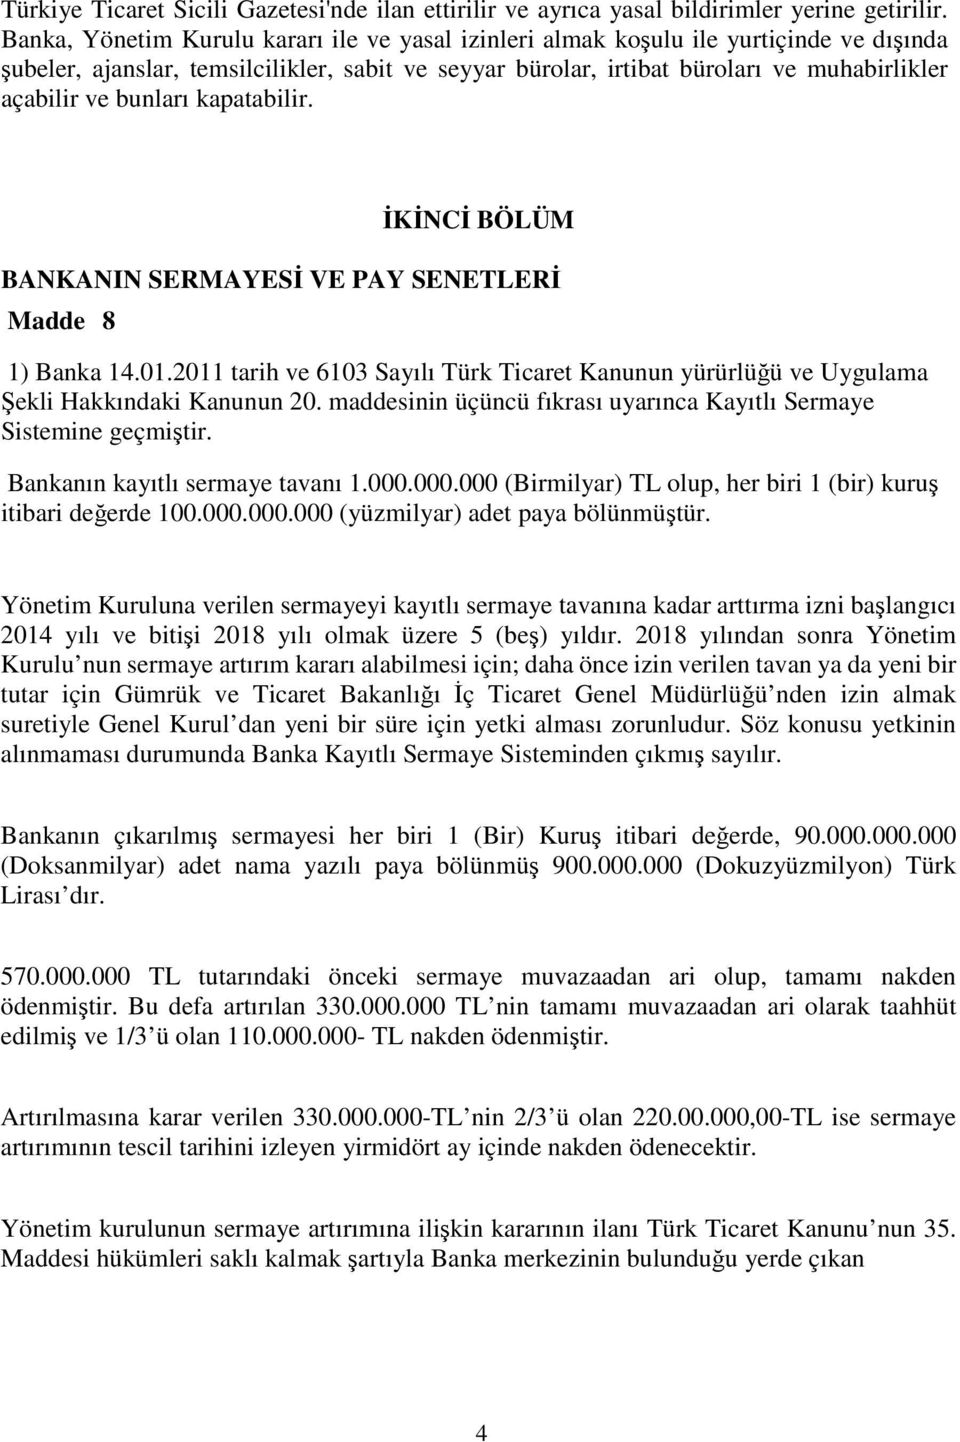 bunları kapatabilir. İKİNCİ BÖLÜM BANKANIN SERMAYESİ VE PAY SENETLERİ Madde 8 1) Banka 14.01.2011 tarih ve 6103 Sayılı Türk Ticaret Kanunun yürürlüğü ve Uygulama Şekli Hakkındaki Kanunun 20.